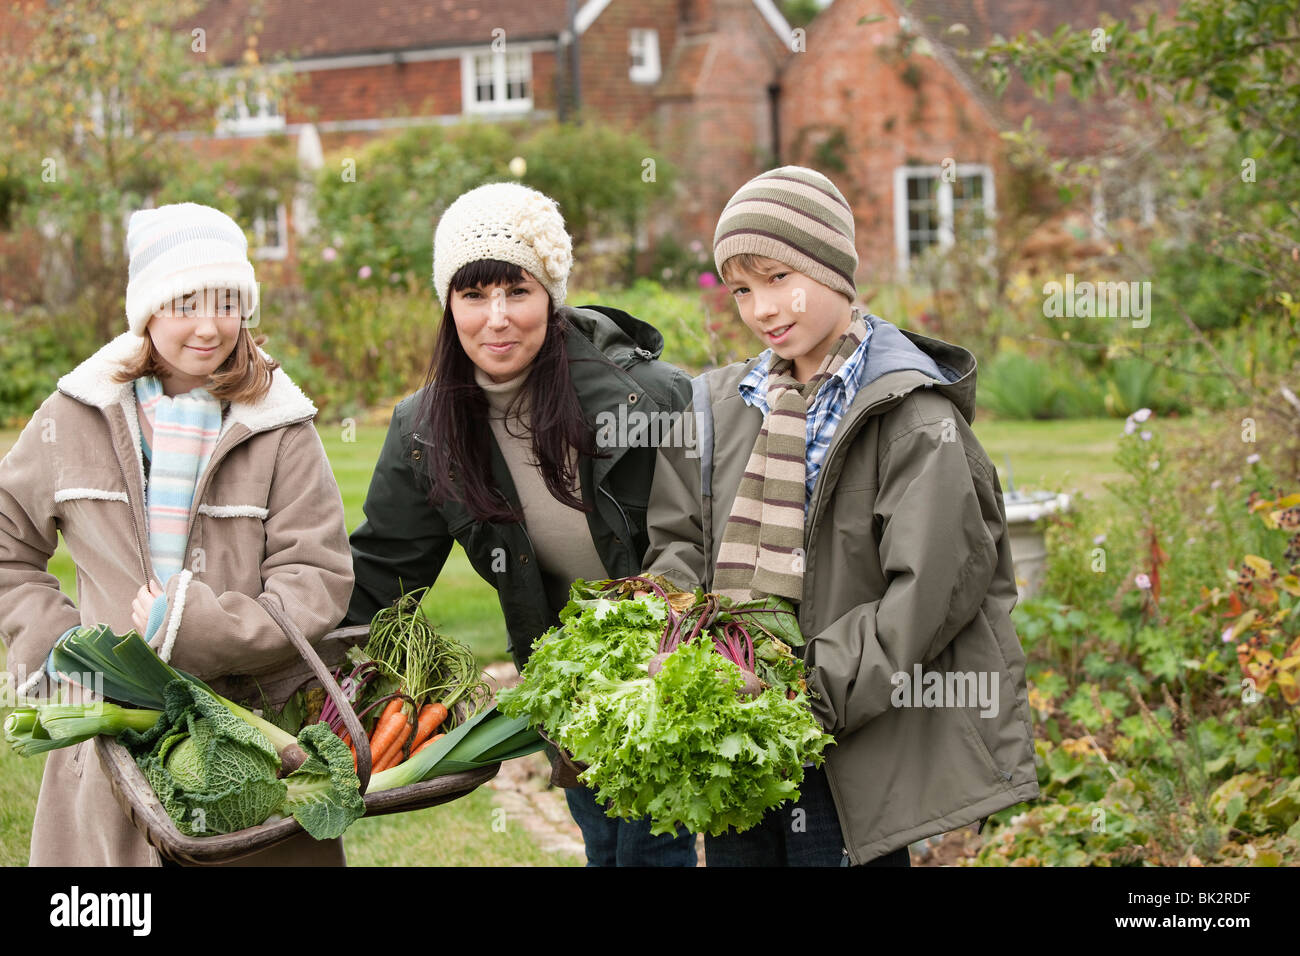 Family picking vegetables in garden Stock Photo